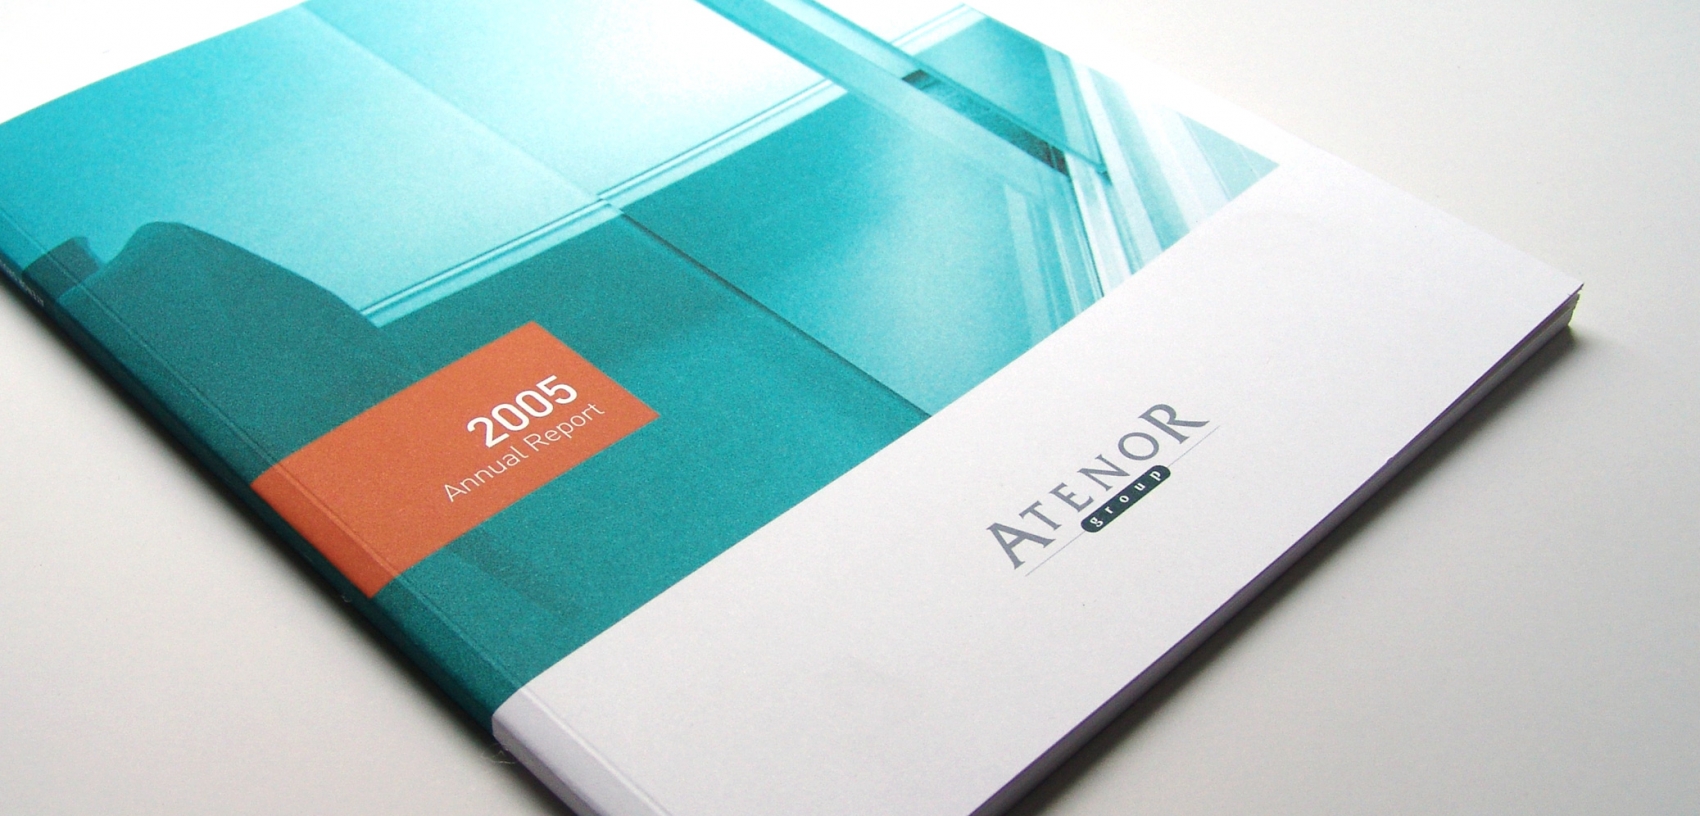 Atenor - Annual Report 2005